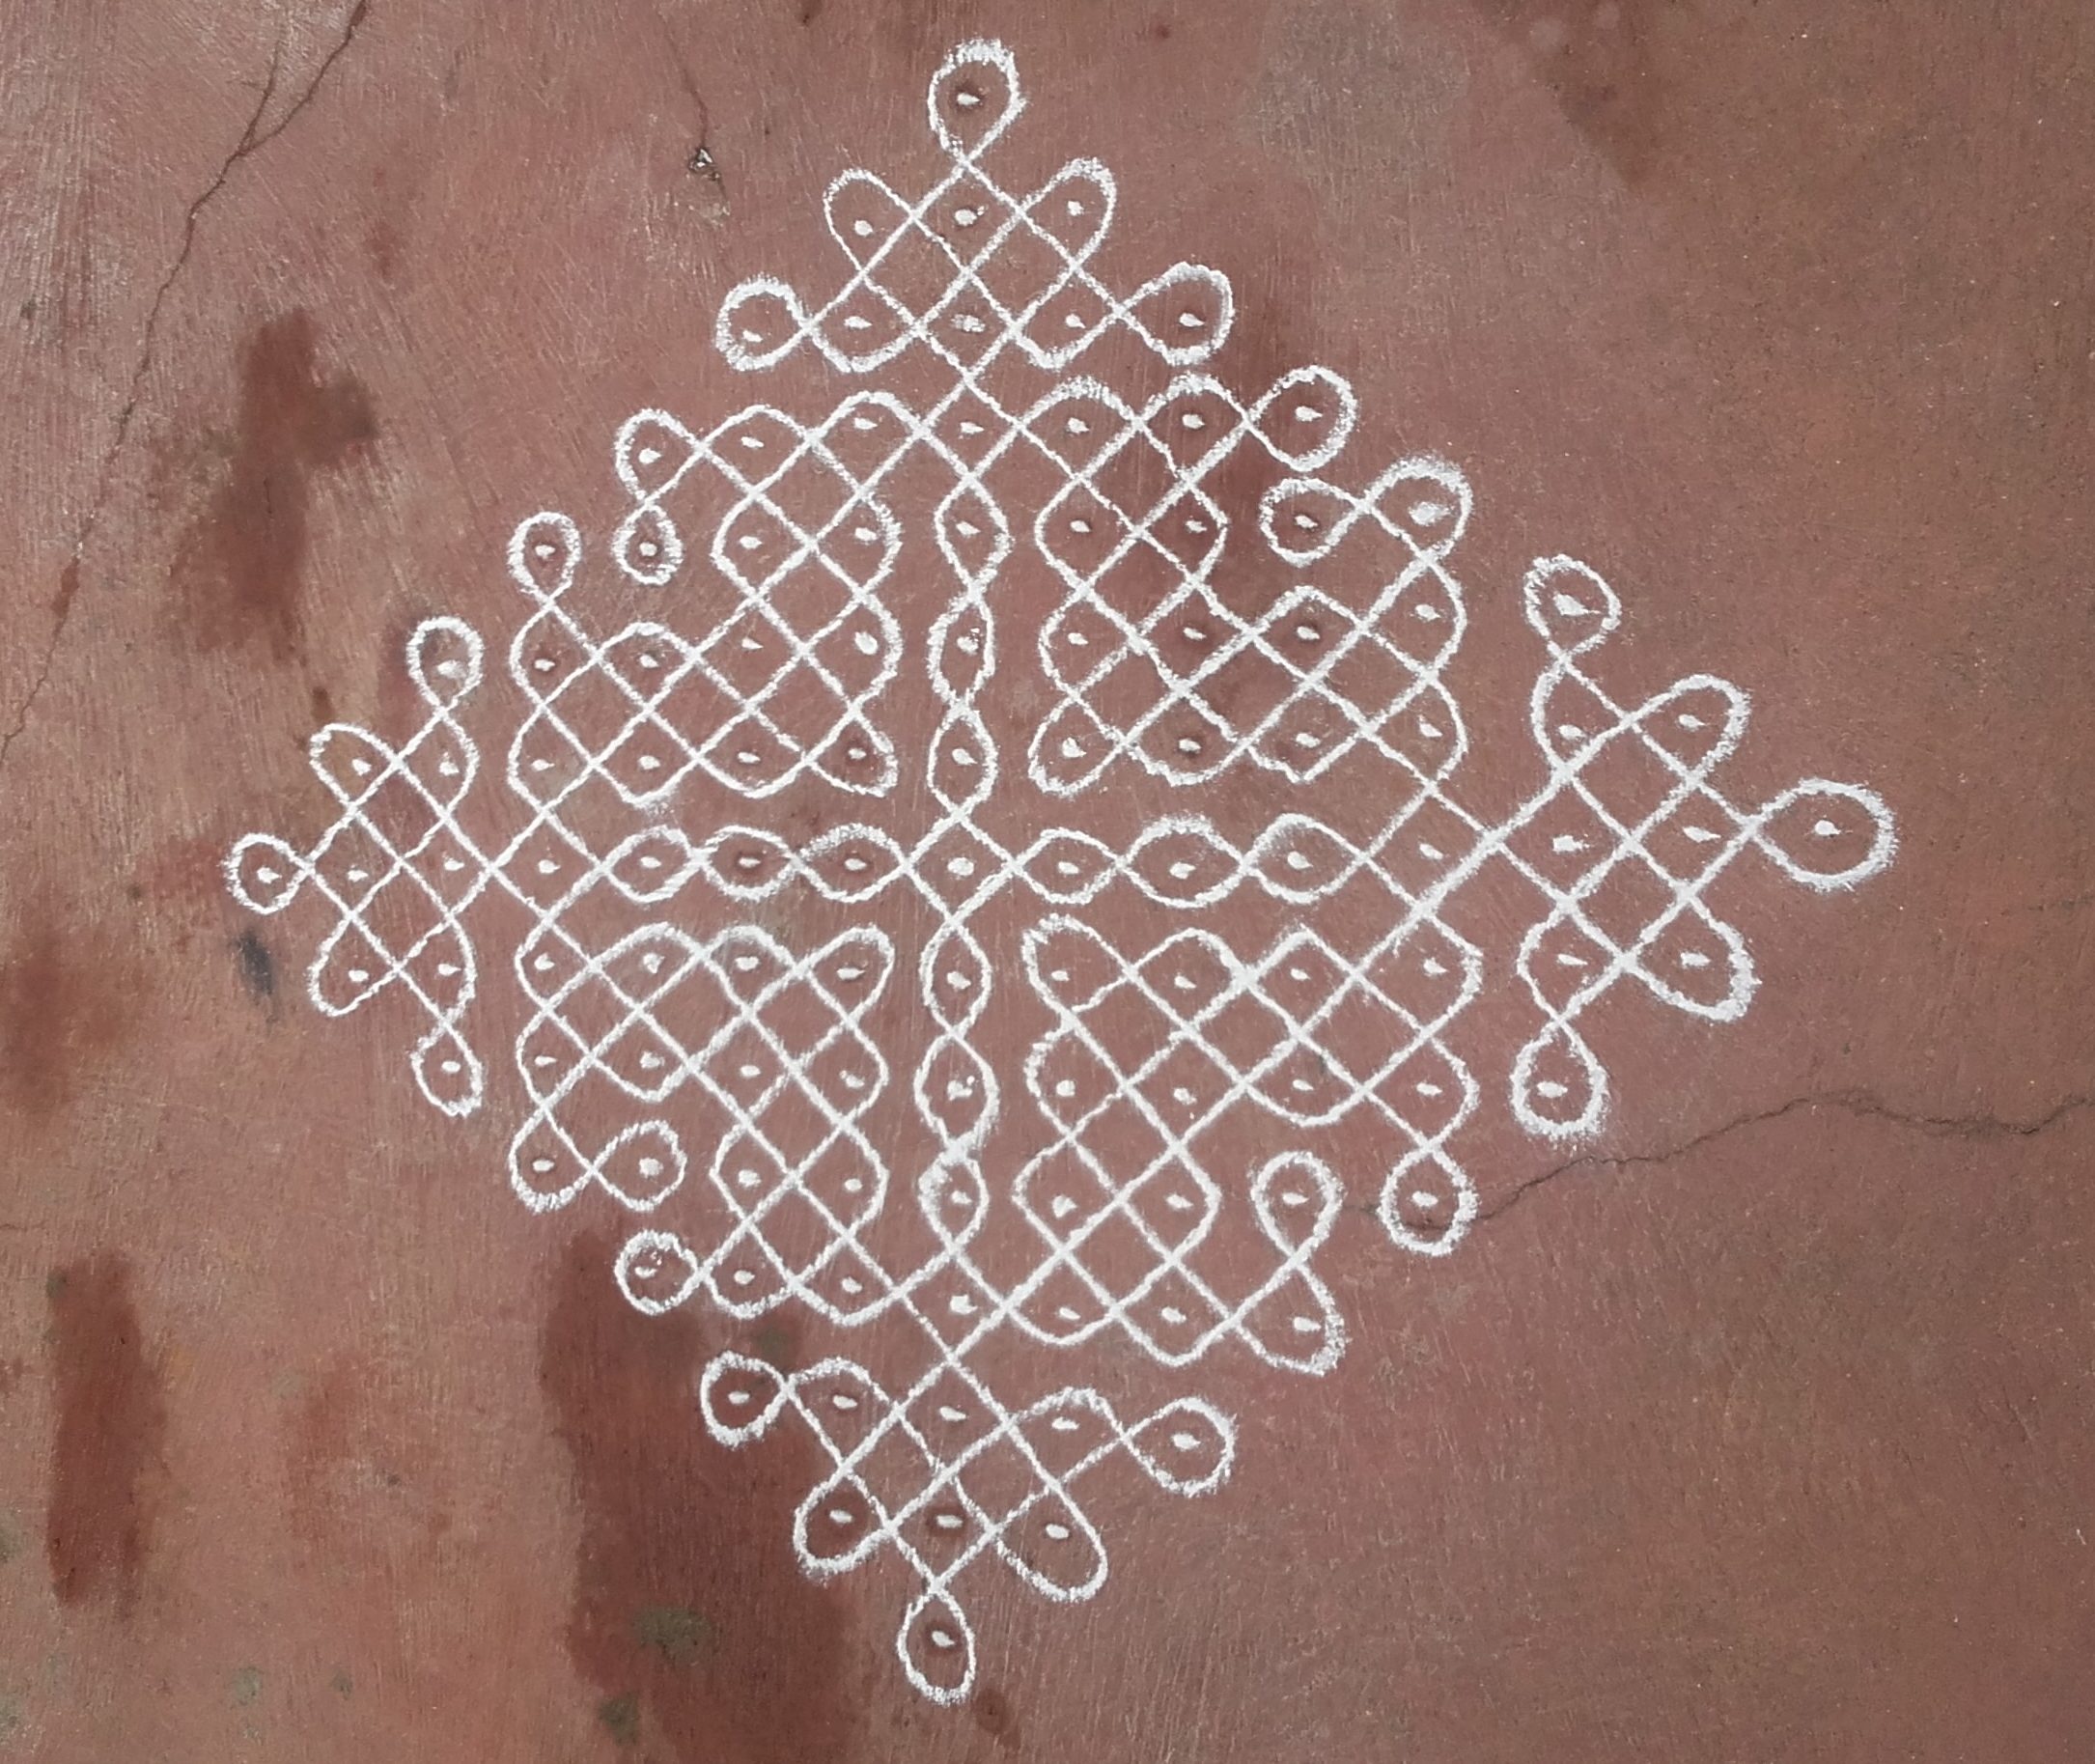 Sikku Kolam with 15 dots – Kolams of India